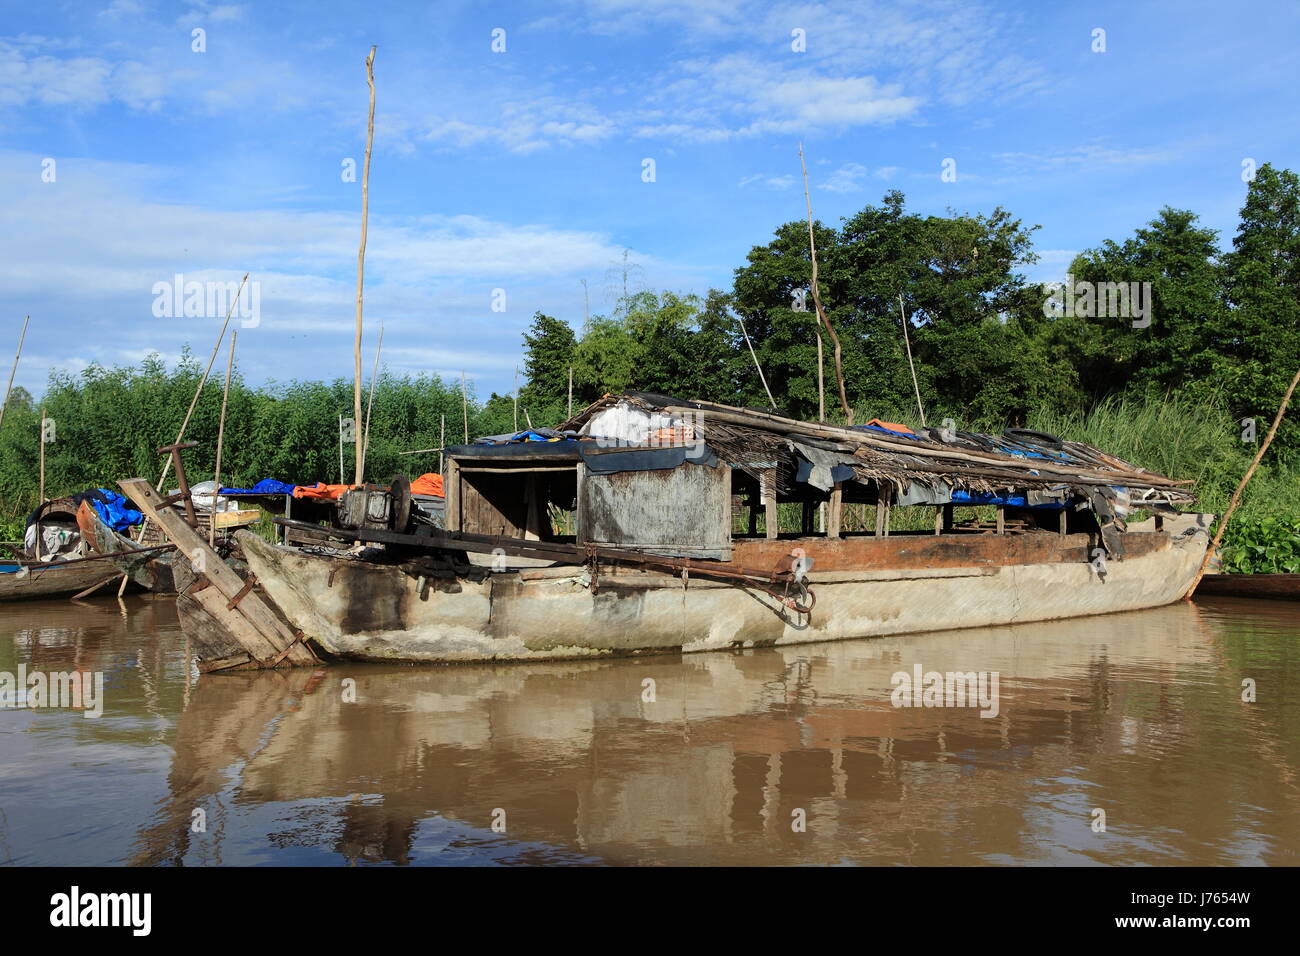 Asia Viet Nam Vietnam Fischer angeln Schiff Ruderboot Segelboot Segelboot Stockfoto